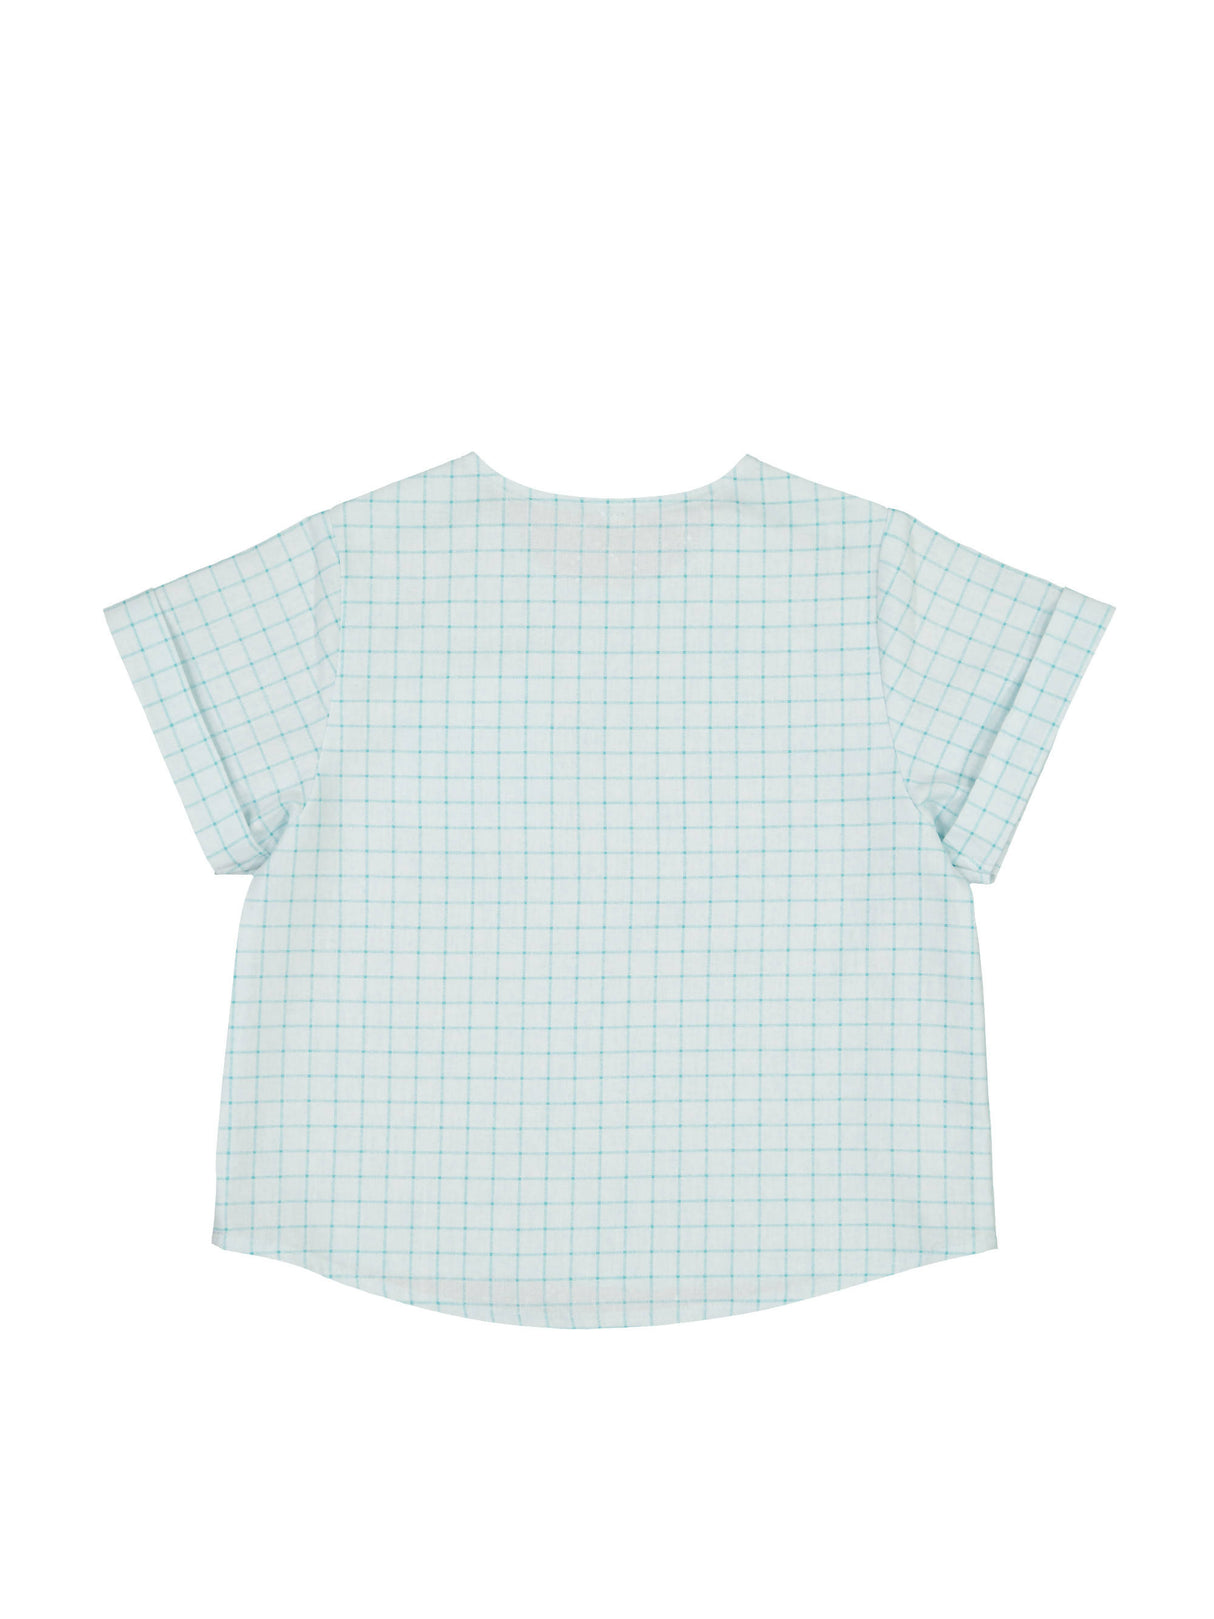 Shirt, Mint Squares - Petite Lucette